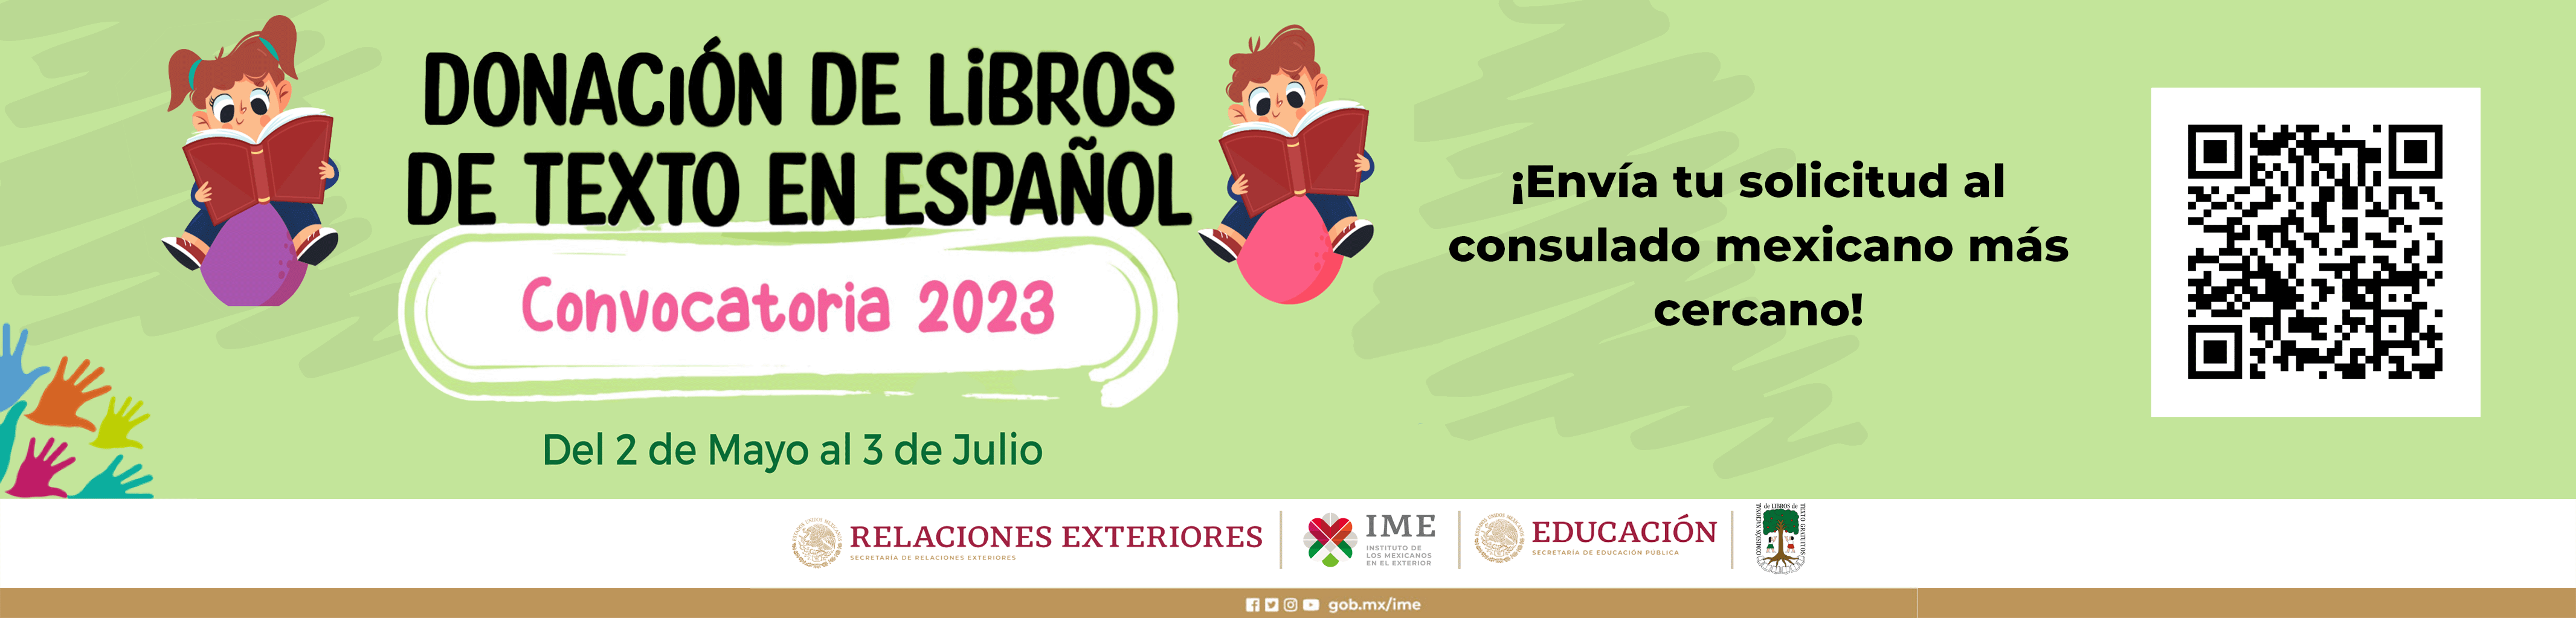 Donación de libros de texto en español